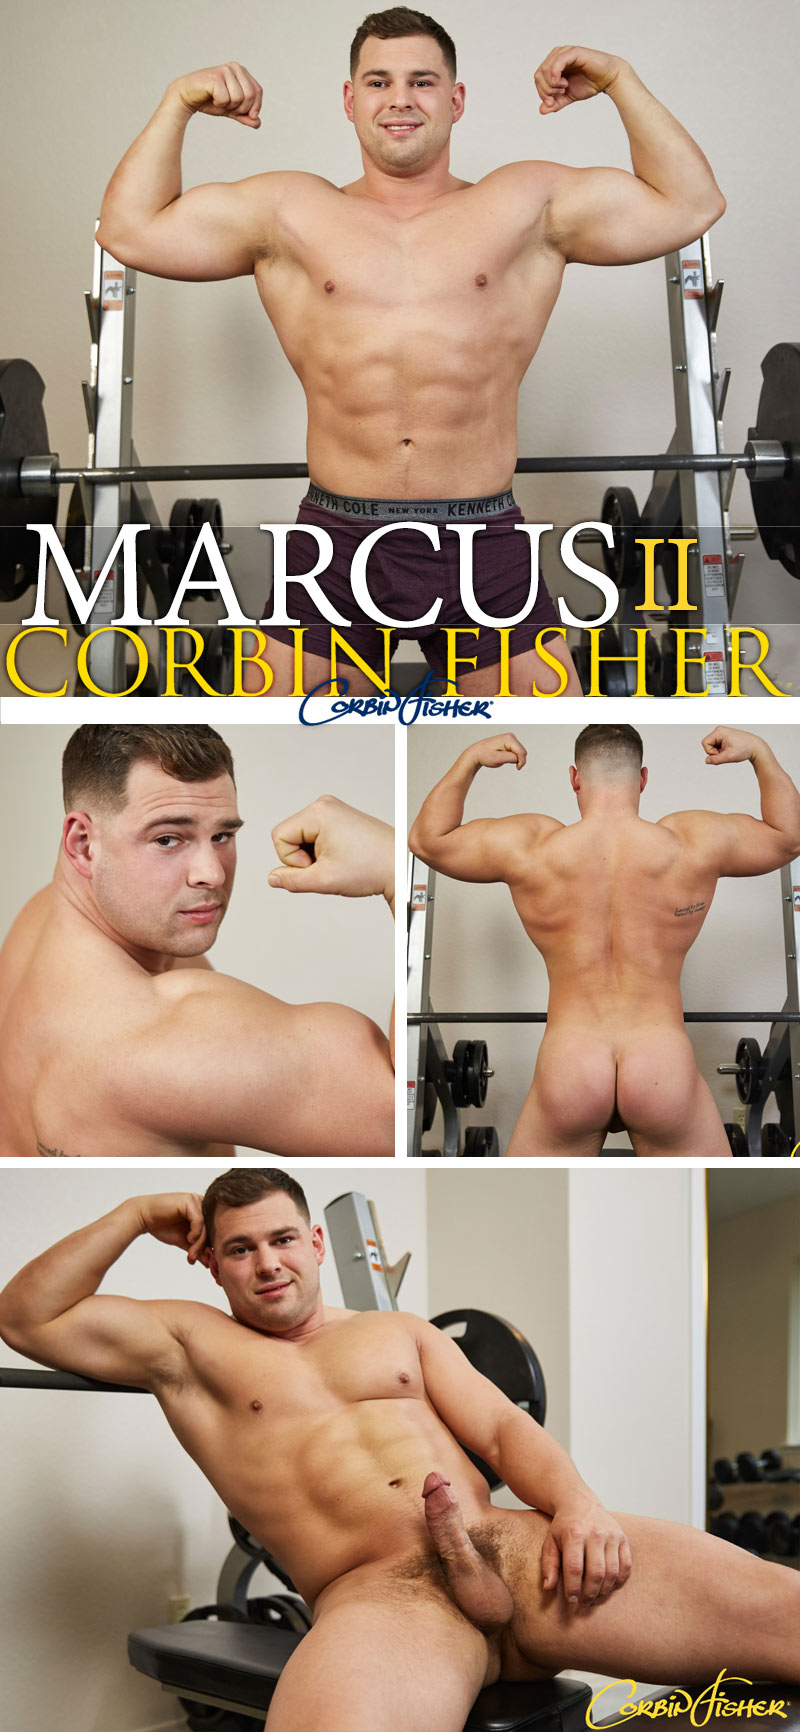 Marcus (II) at Corbin Fisher